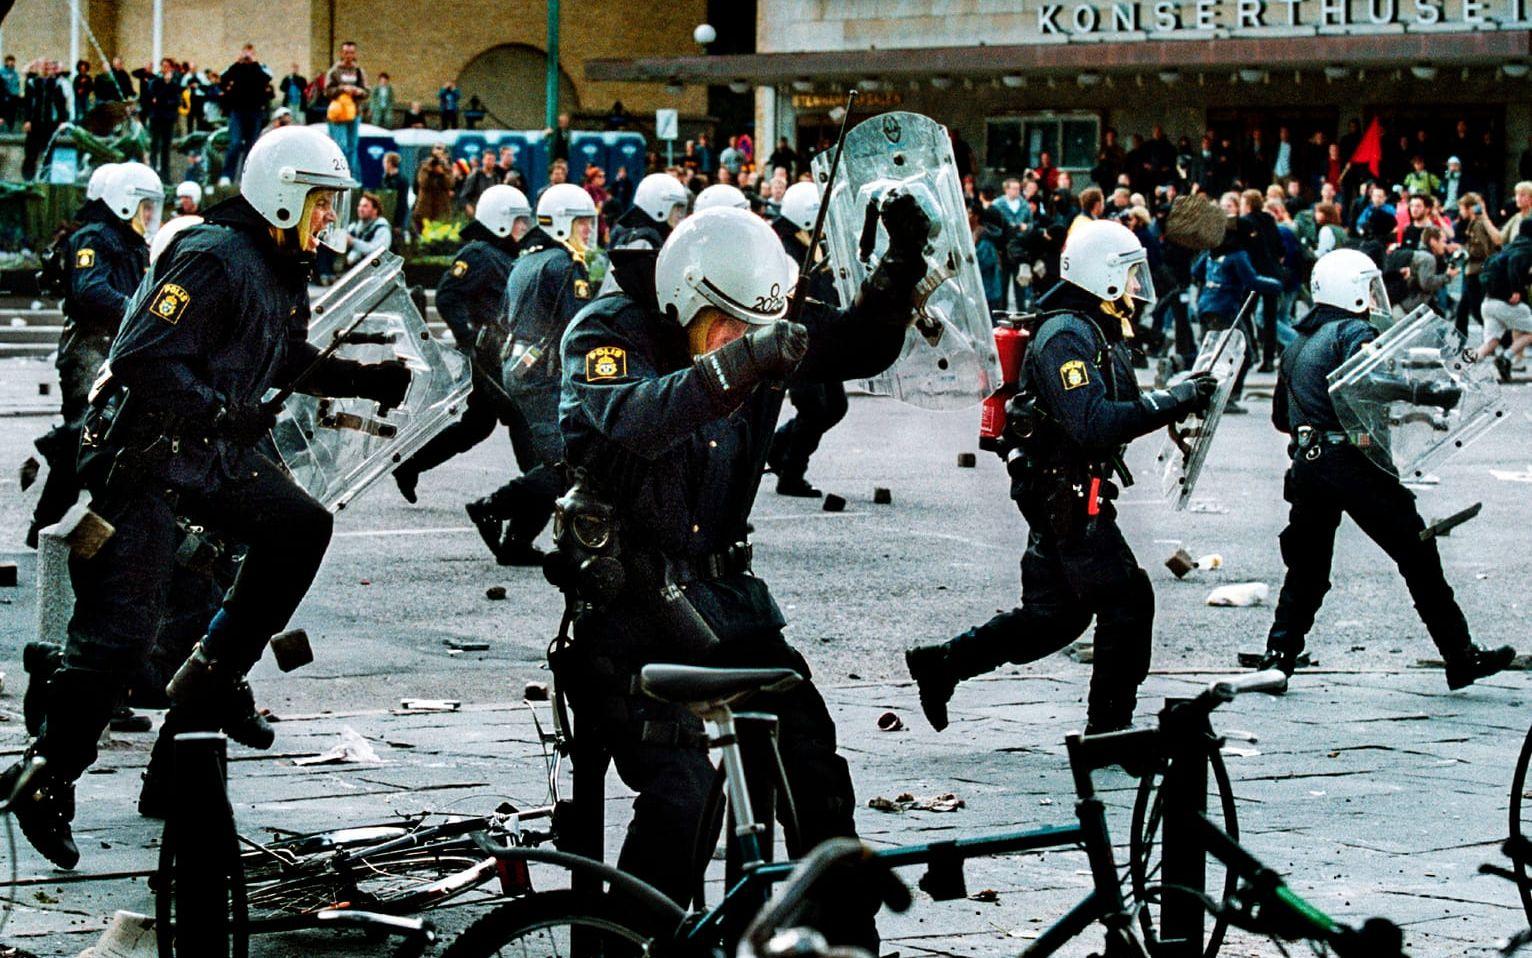 Poliser i konfrontation med demonstranter på Avenyn den 15 juni 2001. Kravallerna i samband med EU-toppmötet i Göteborg sommaren 2001 pågick under flera dagar. I efterspelet åtalades cirka 80 demonstranter och ett halvdussin poliser. Poliserna friades. 70 demonstranter dömdes, många för våldsamt upplopp. Tolkningarna av Göteborgskravallernas orsaker och följder har blivit ett slags göteborgsk politisk vattendelare. Vissa har sett demonstrationerna som ett uppfriskande motstånd mot en repressiv övermakt, rentav som ett slags väckelse hos en rörelse som, i brist på bättre beteckning, skulle kunna kallas en bred politisk vänster. Andra har sett händelserna som en bekräftelse på samma vänsterrörelsers oförmåga att respektera demokratiska regler. 